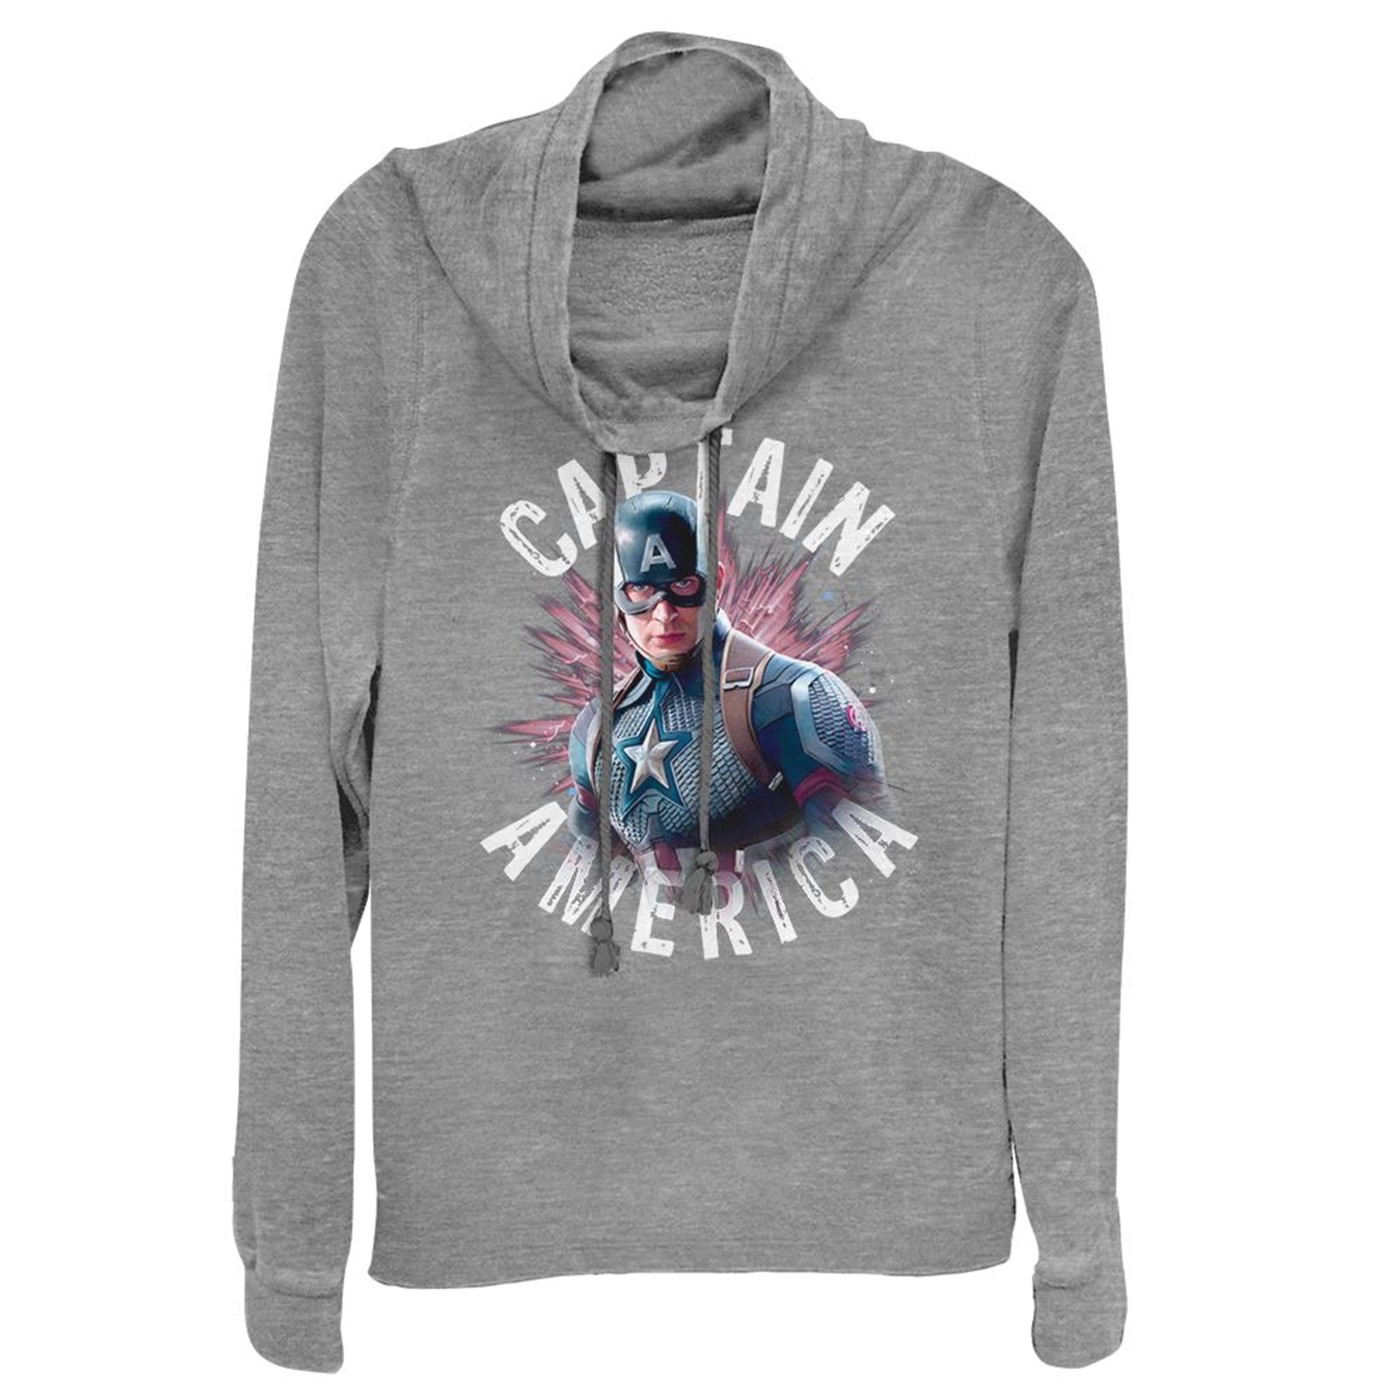 Avengers Endgame Captain America Burst Women's Cowl Neck Sweater